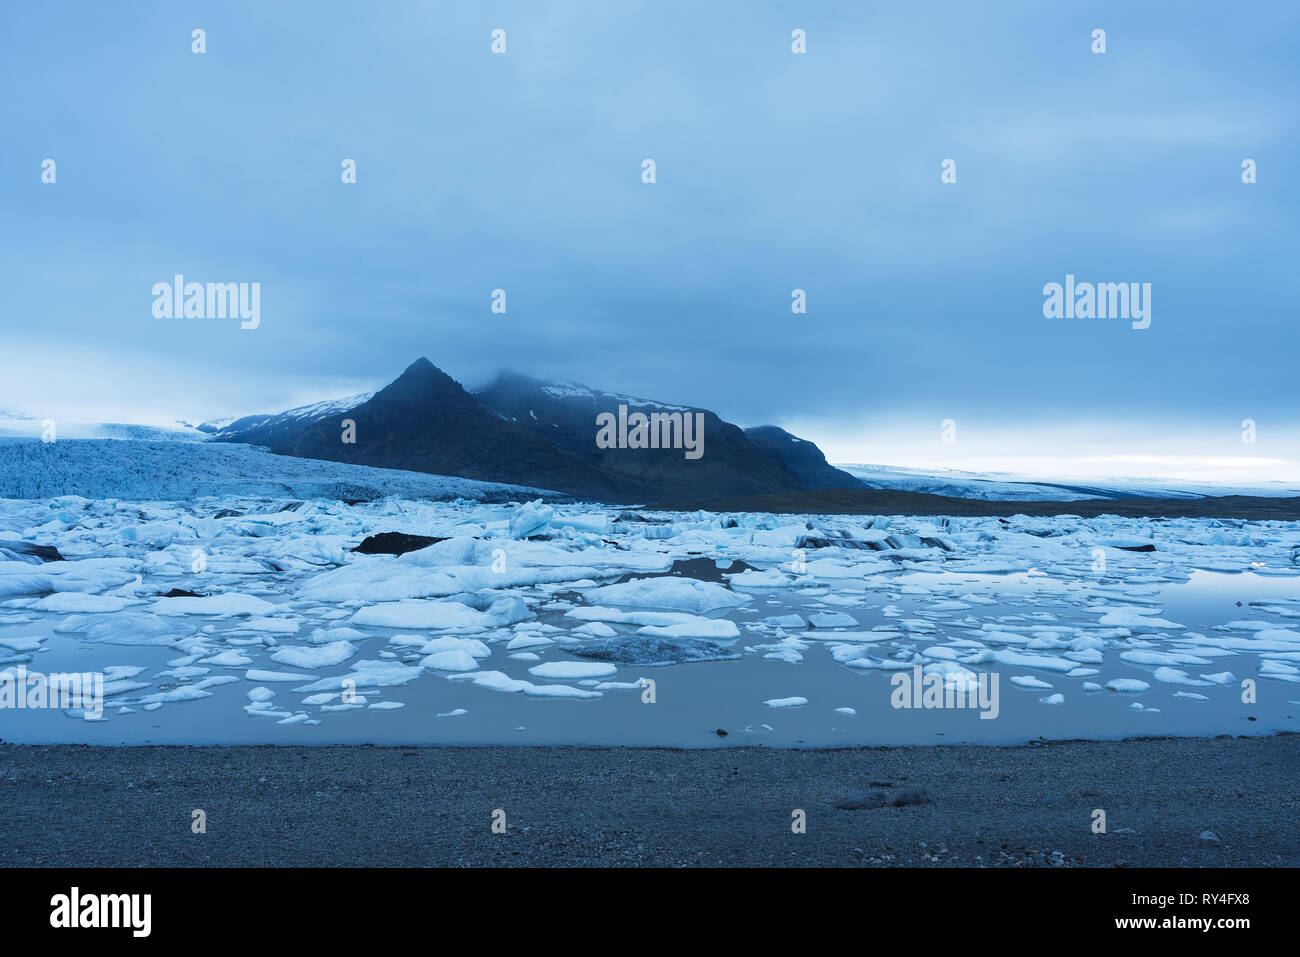 Abend Landschaft mit Eisschollen in den Gletschersee Fjallsarlon. Vatnajökull National Park, Island, Europa. Tolle touristische Attraktion Stockfoto